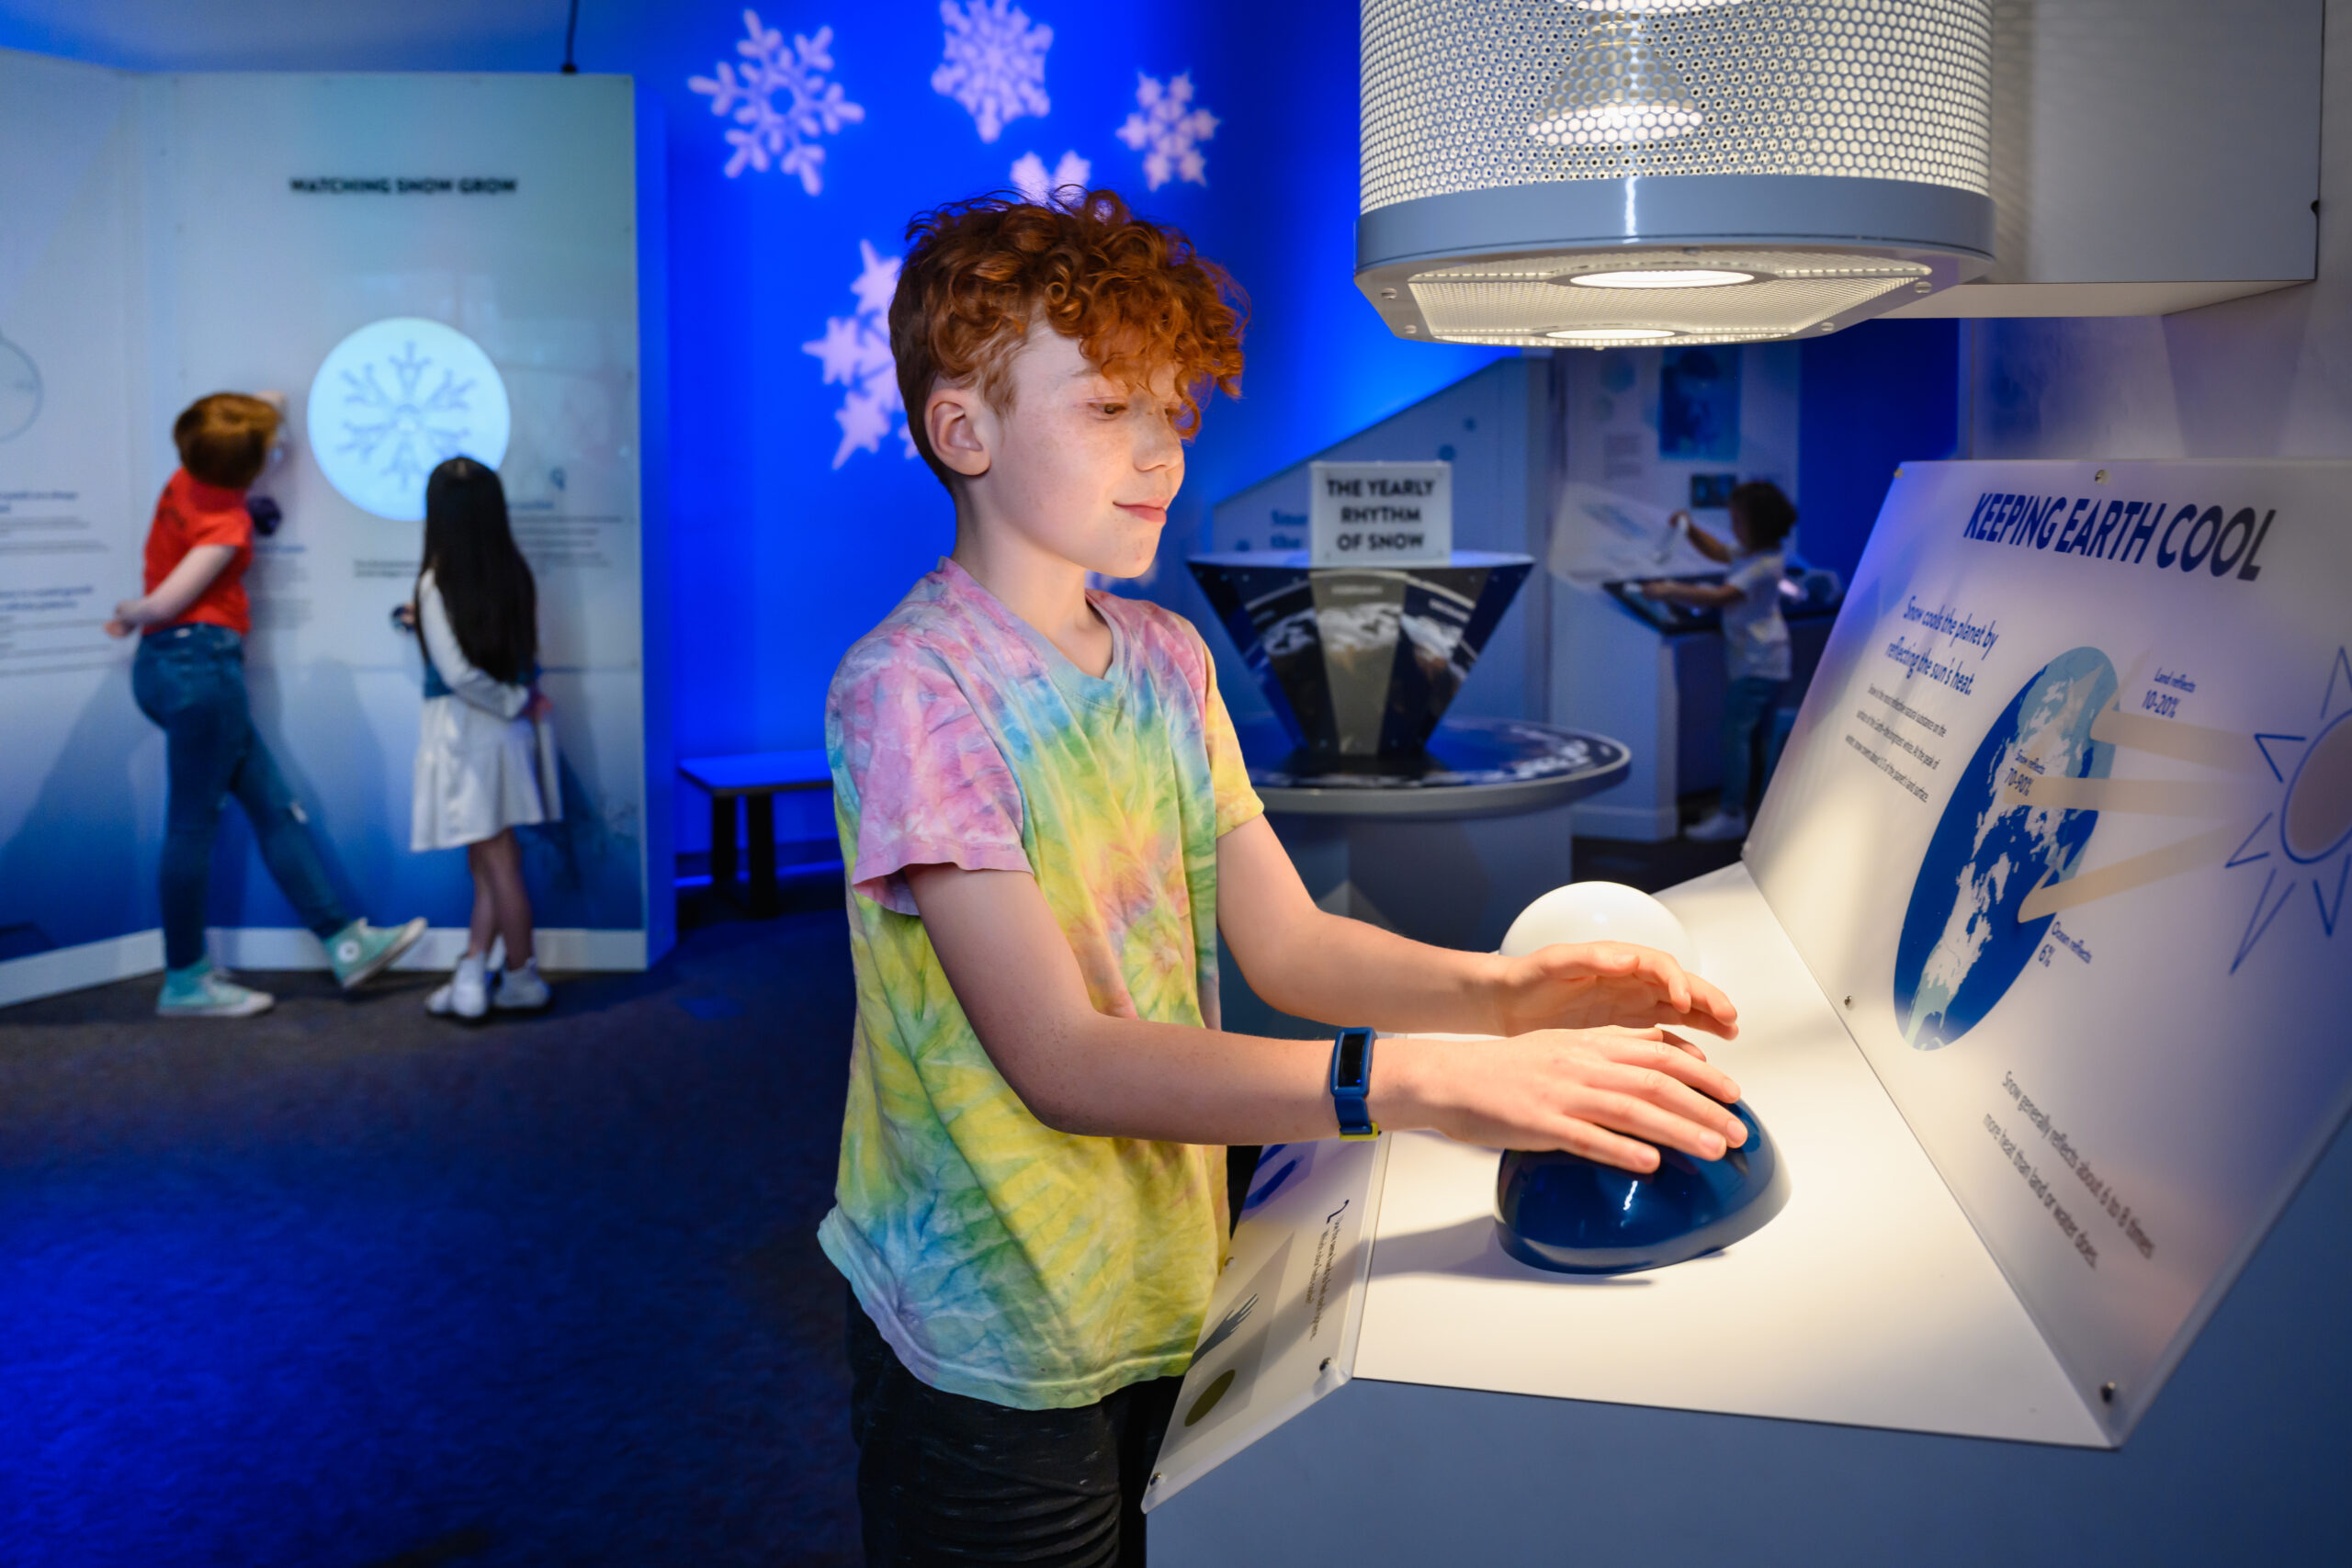 kid interacting with snow exhibit